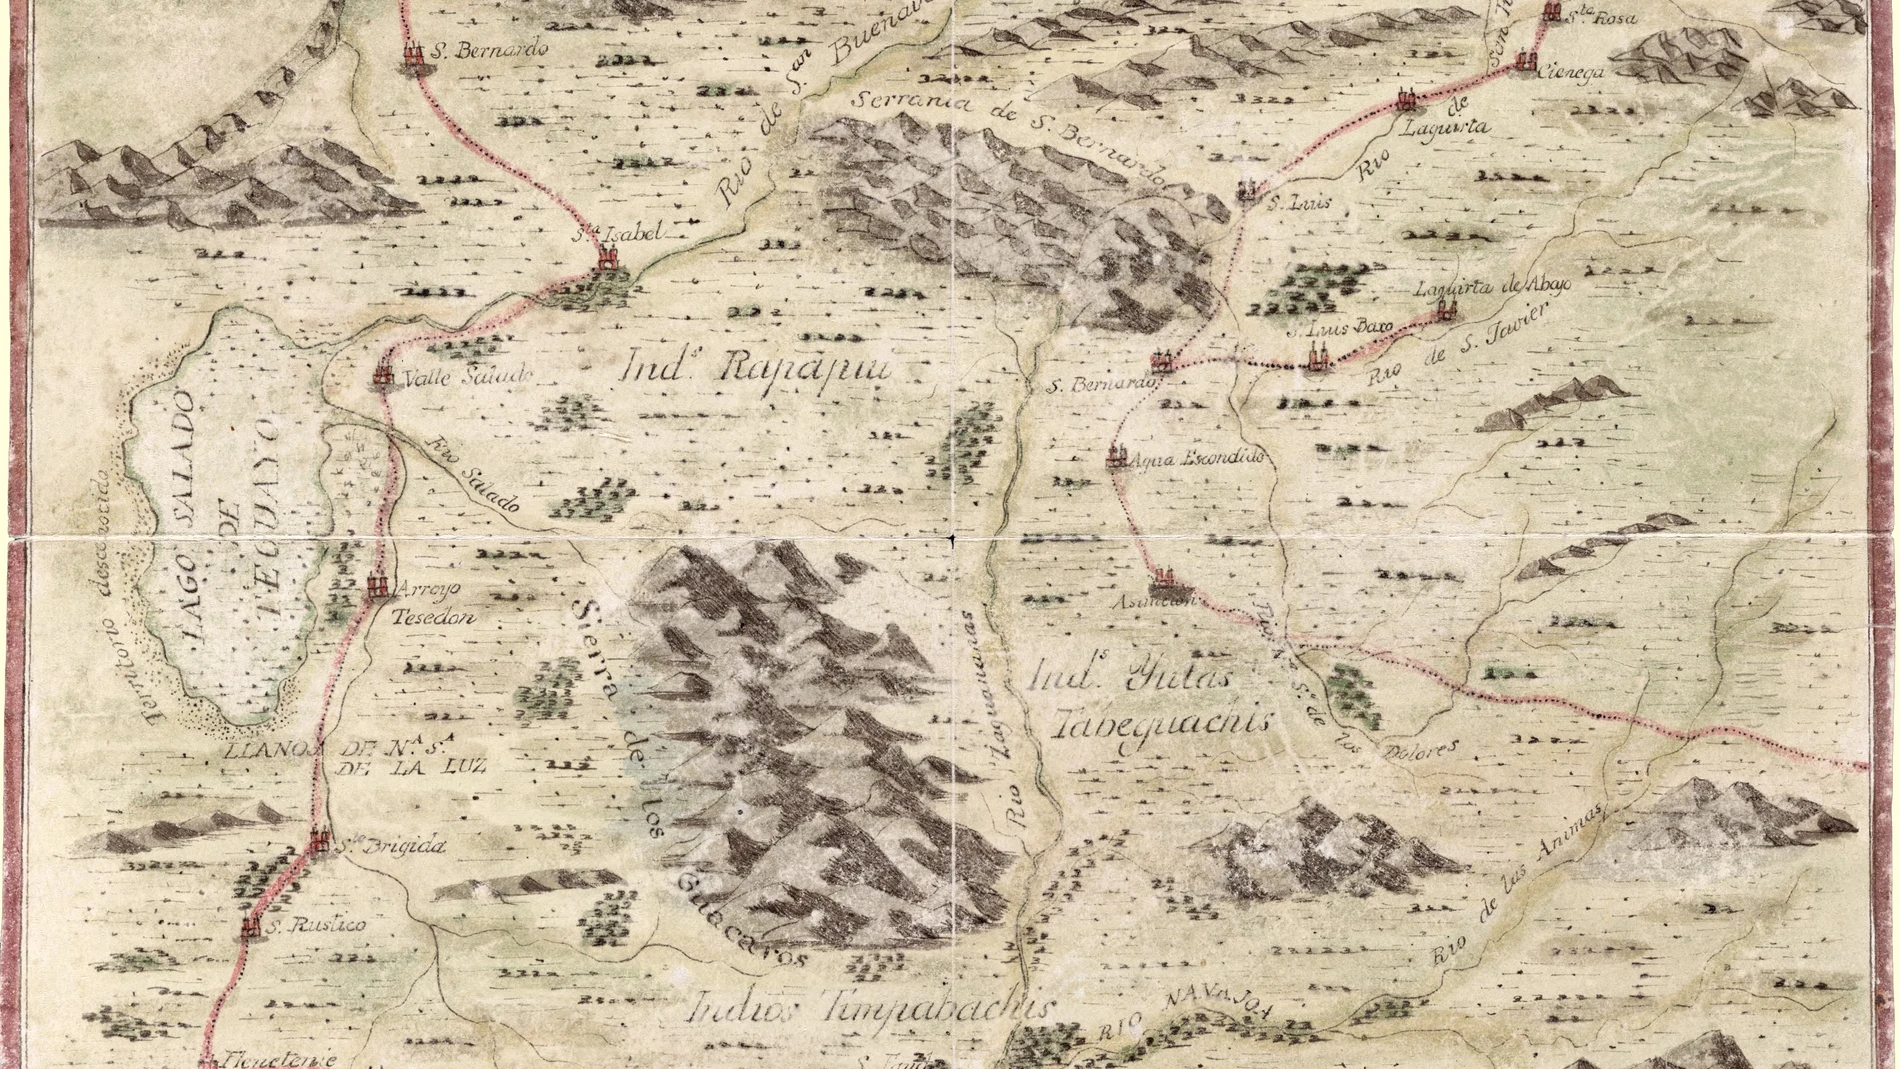 Mapa realizado por el misionero Antonio Vélez y Escalante sobre los pueblos de indios y presidios que se hallan en el Camino de Monterrey a Santa Fe de Nuevo Mexico